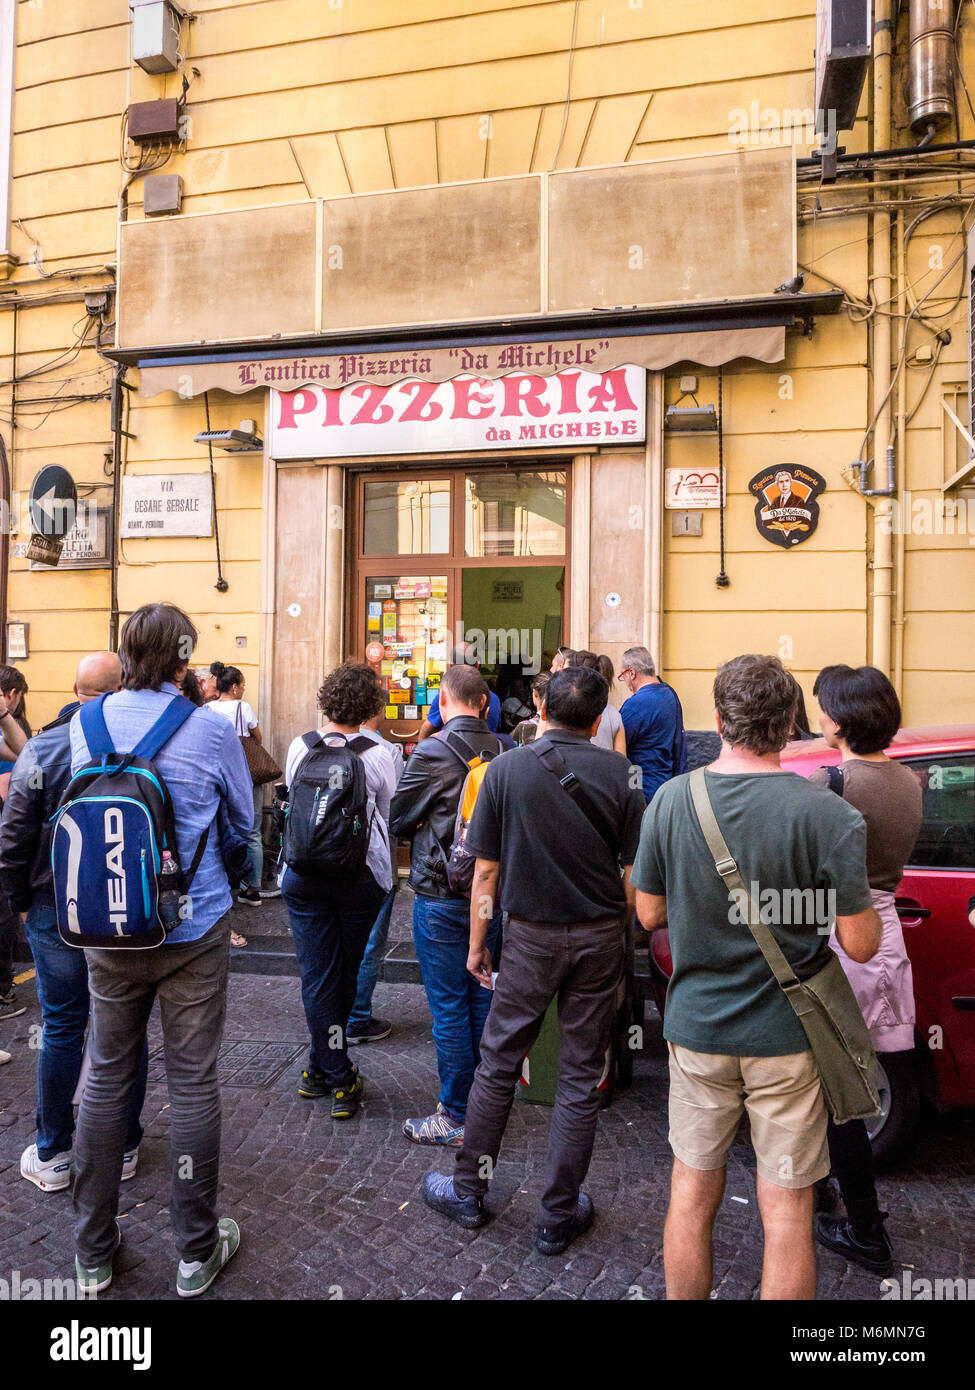 Queue outside L'antica Pizzeria da Michele, Naples, Italy. Stock Photo